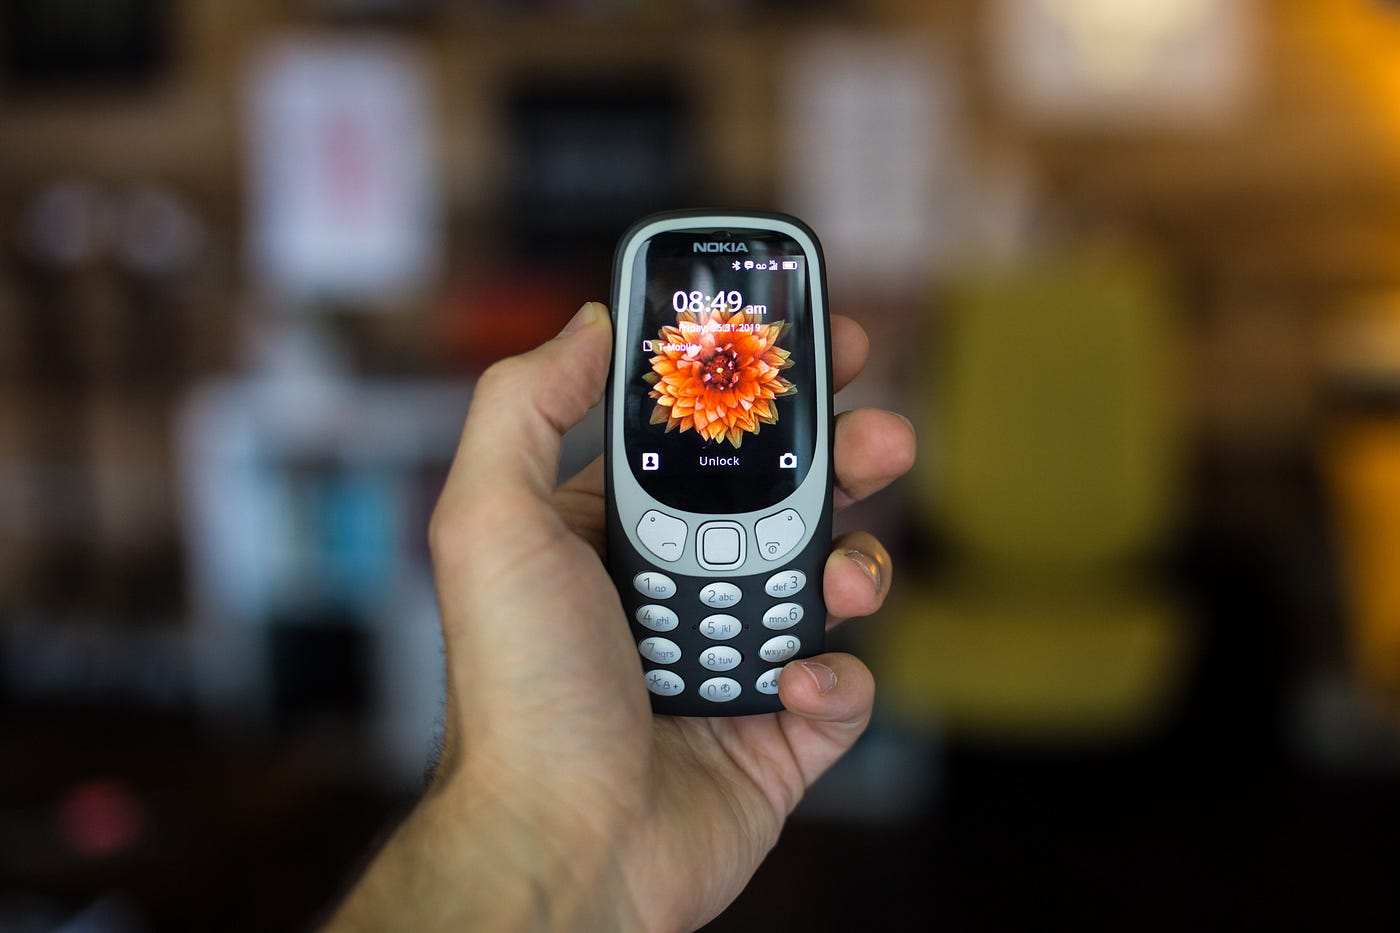 Tú también tienes un viejo celular Nokia en la gaveta? | by Patricia  Camacho | Fonoma Blog